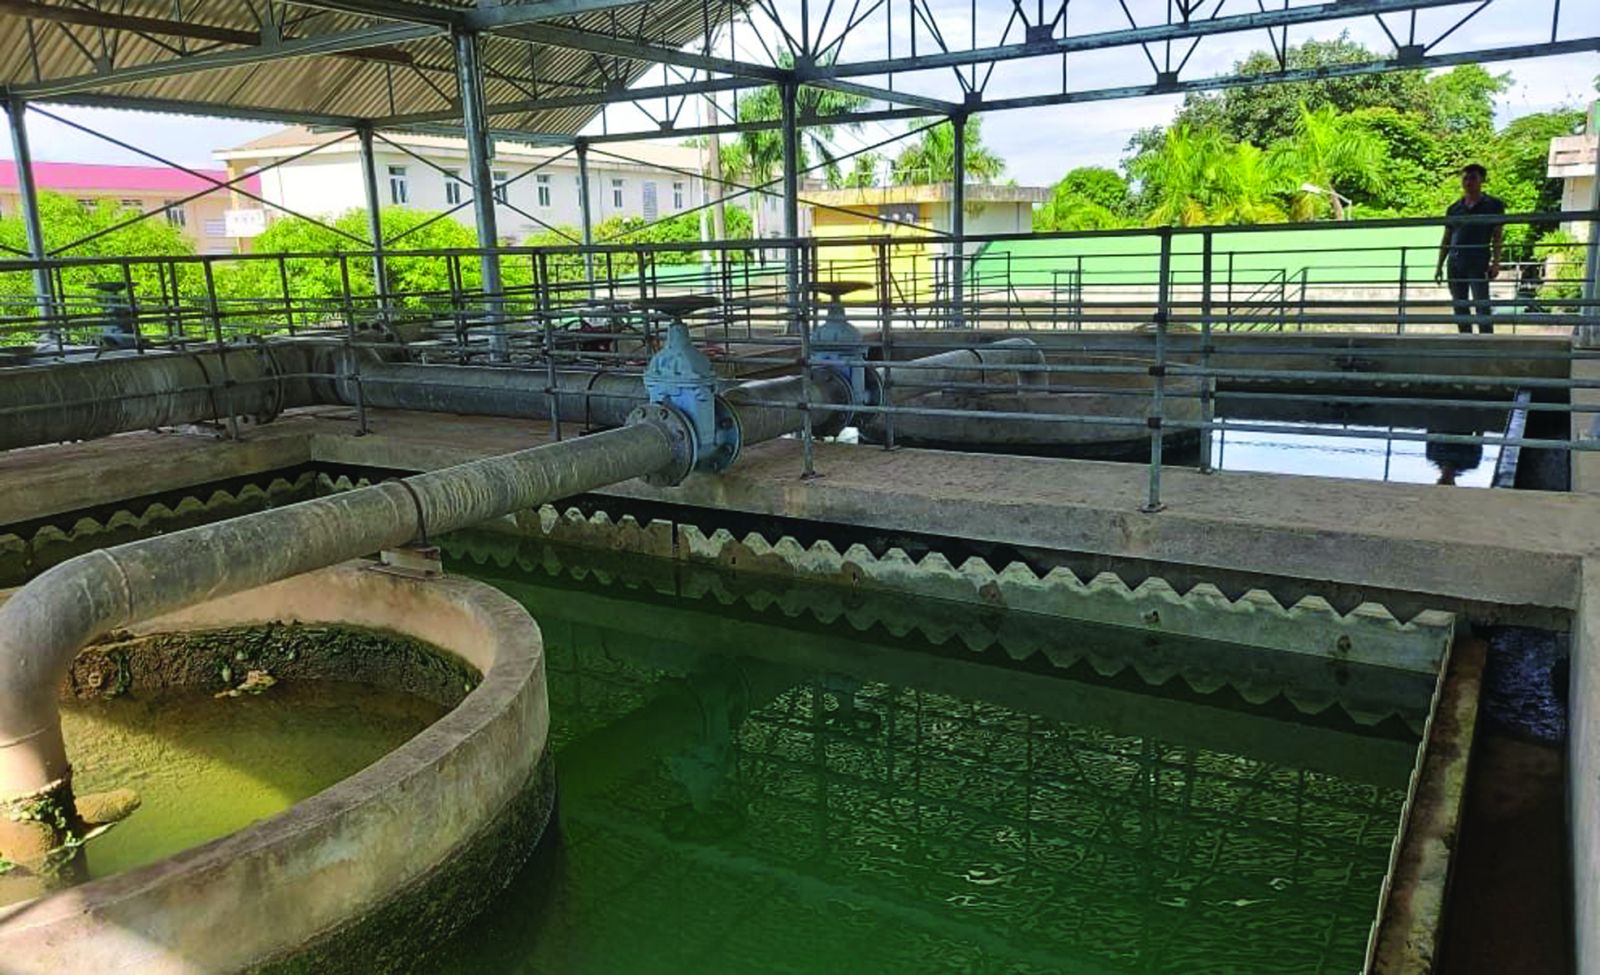  Vụ việc tranh chấp về hợp đồng mua bán nước thô giữa Công ty CP cấp nước Nghệ An và TNHH MTV cấp nước Sông Lam đến nay vẫn chưa có hồi kết